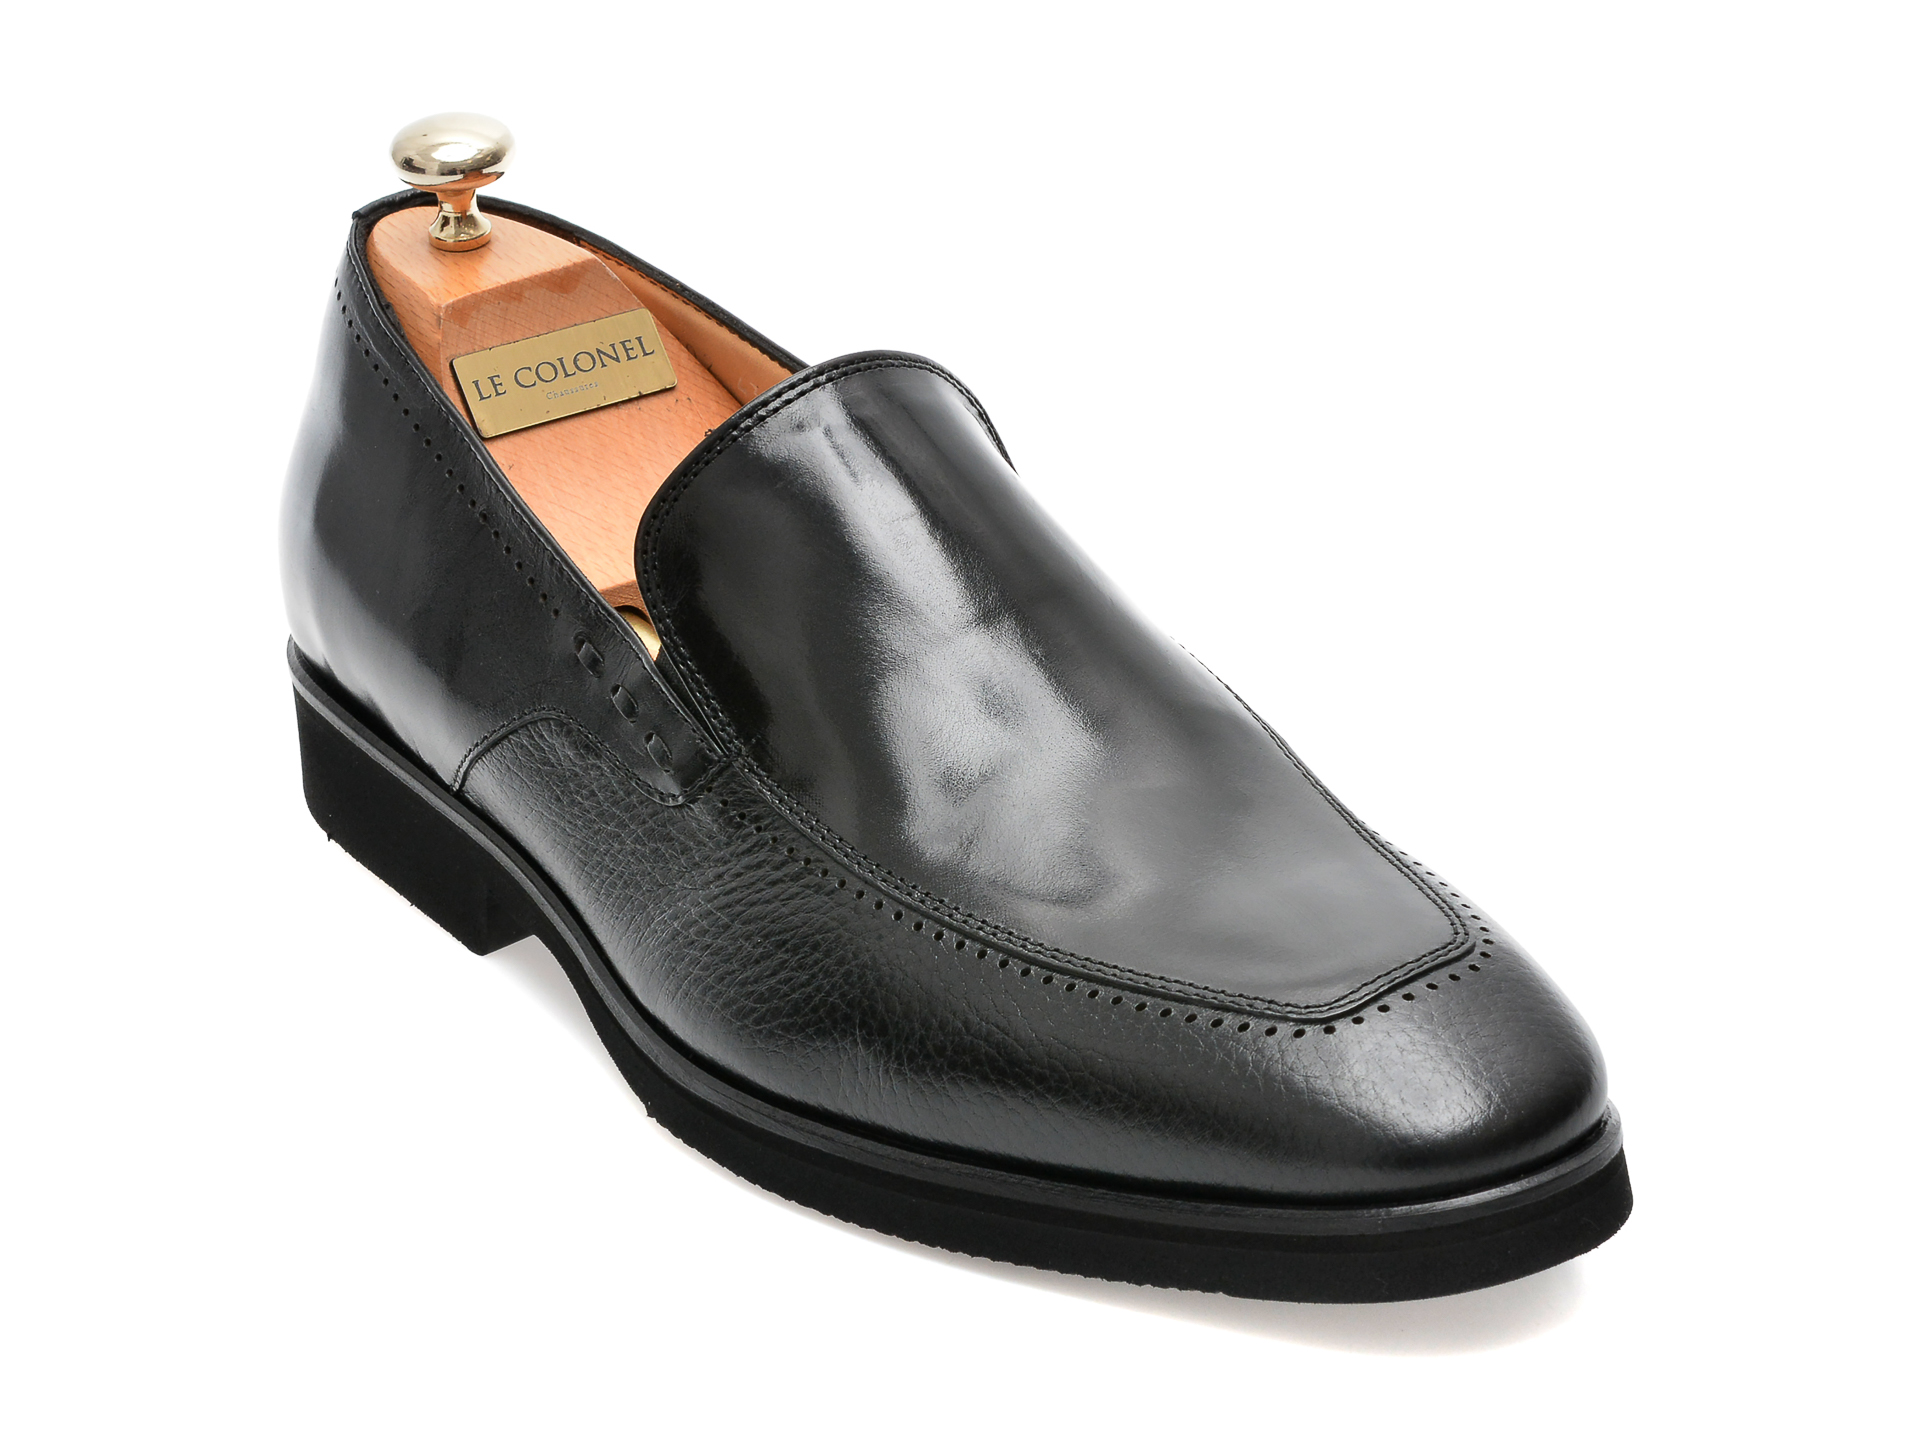 Pantofi LE COLONEL negri, 48702, din piele naturala Incaltaminte Barbati 2023-09-27